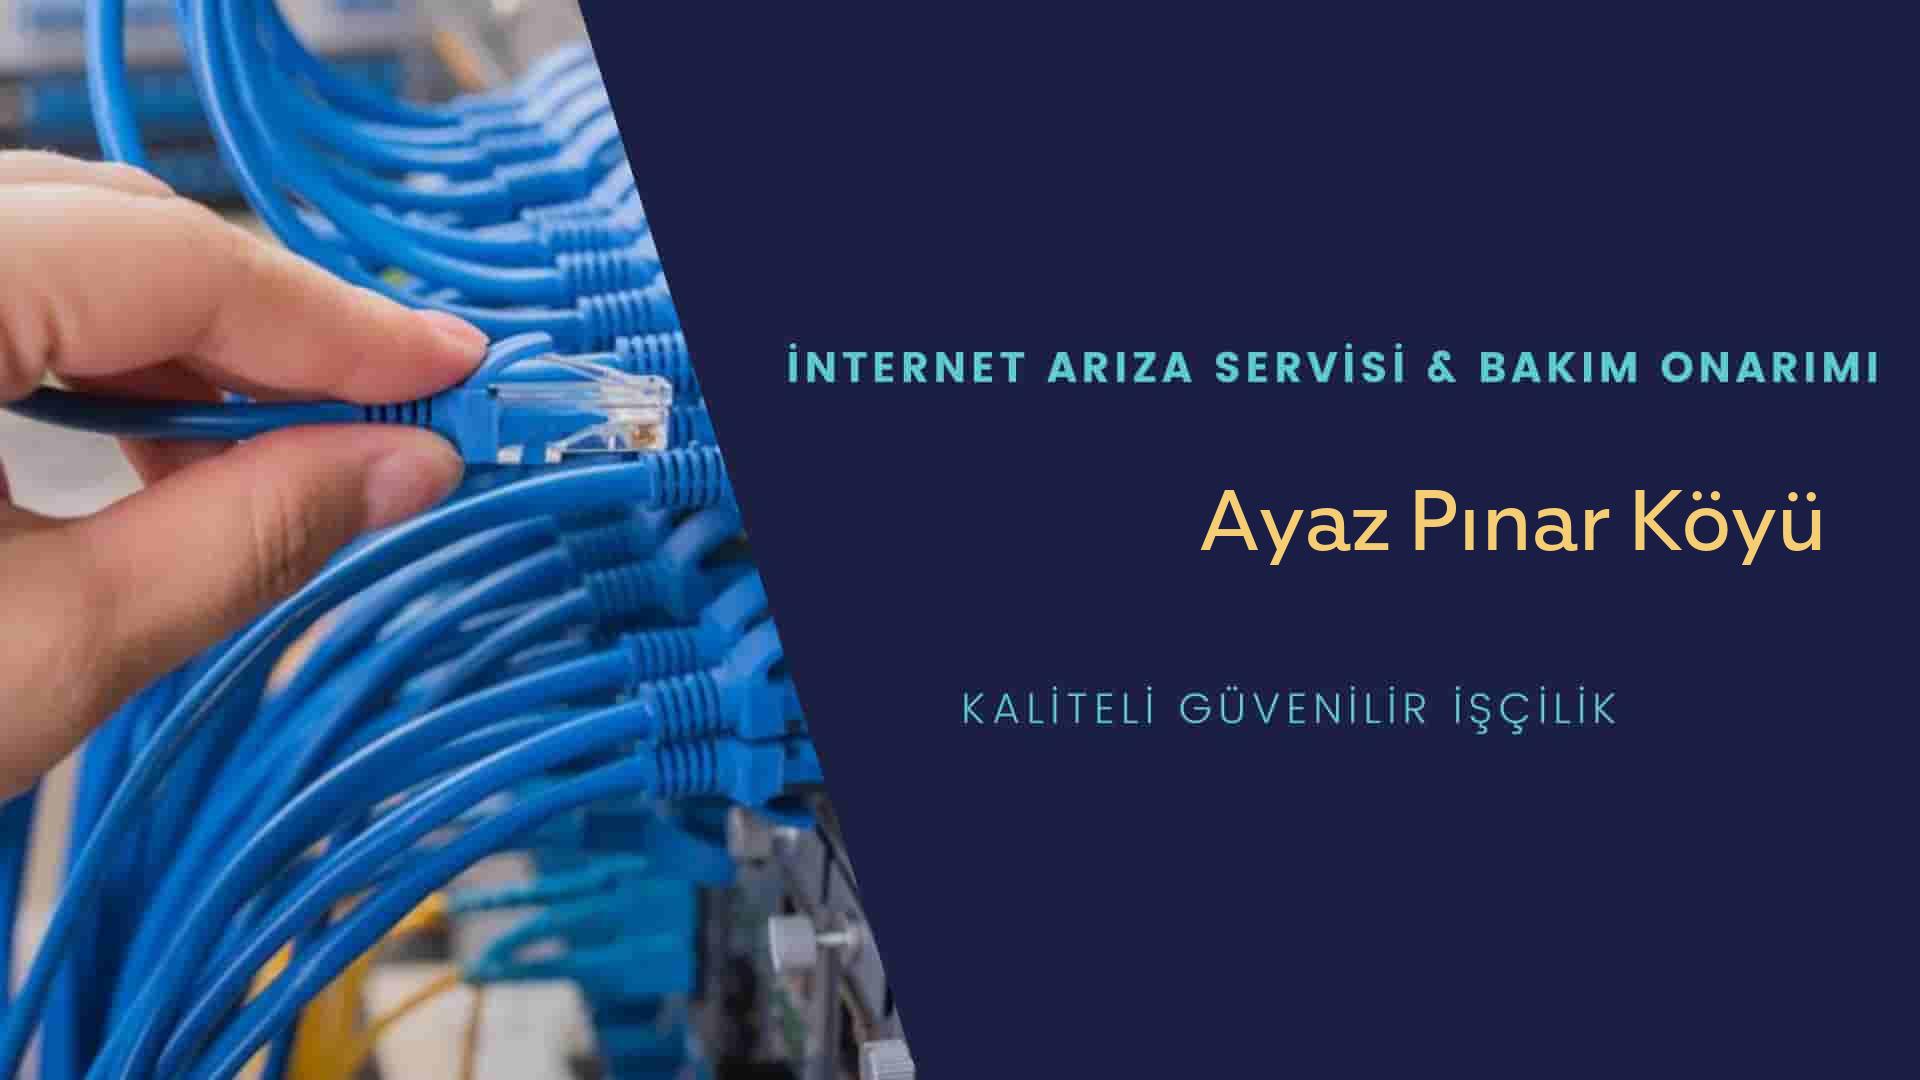 Ayaz Pınar Köyü internet kablosu çekimi yapan yerler veya elektrikçiler mi? arıyorsunuz doğru yerdesiniz o zaman sizlere 7/24 yardımcı olacak profesyonel ustalarımız bir telefon kadar yakındır size.